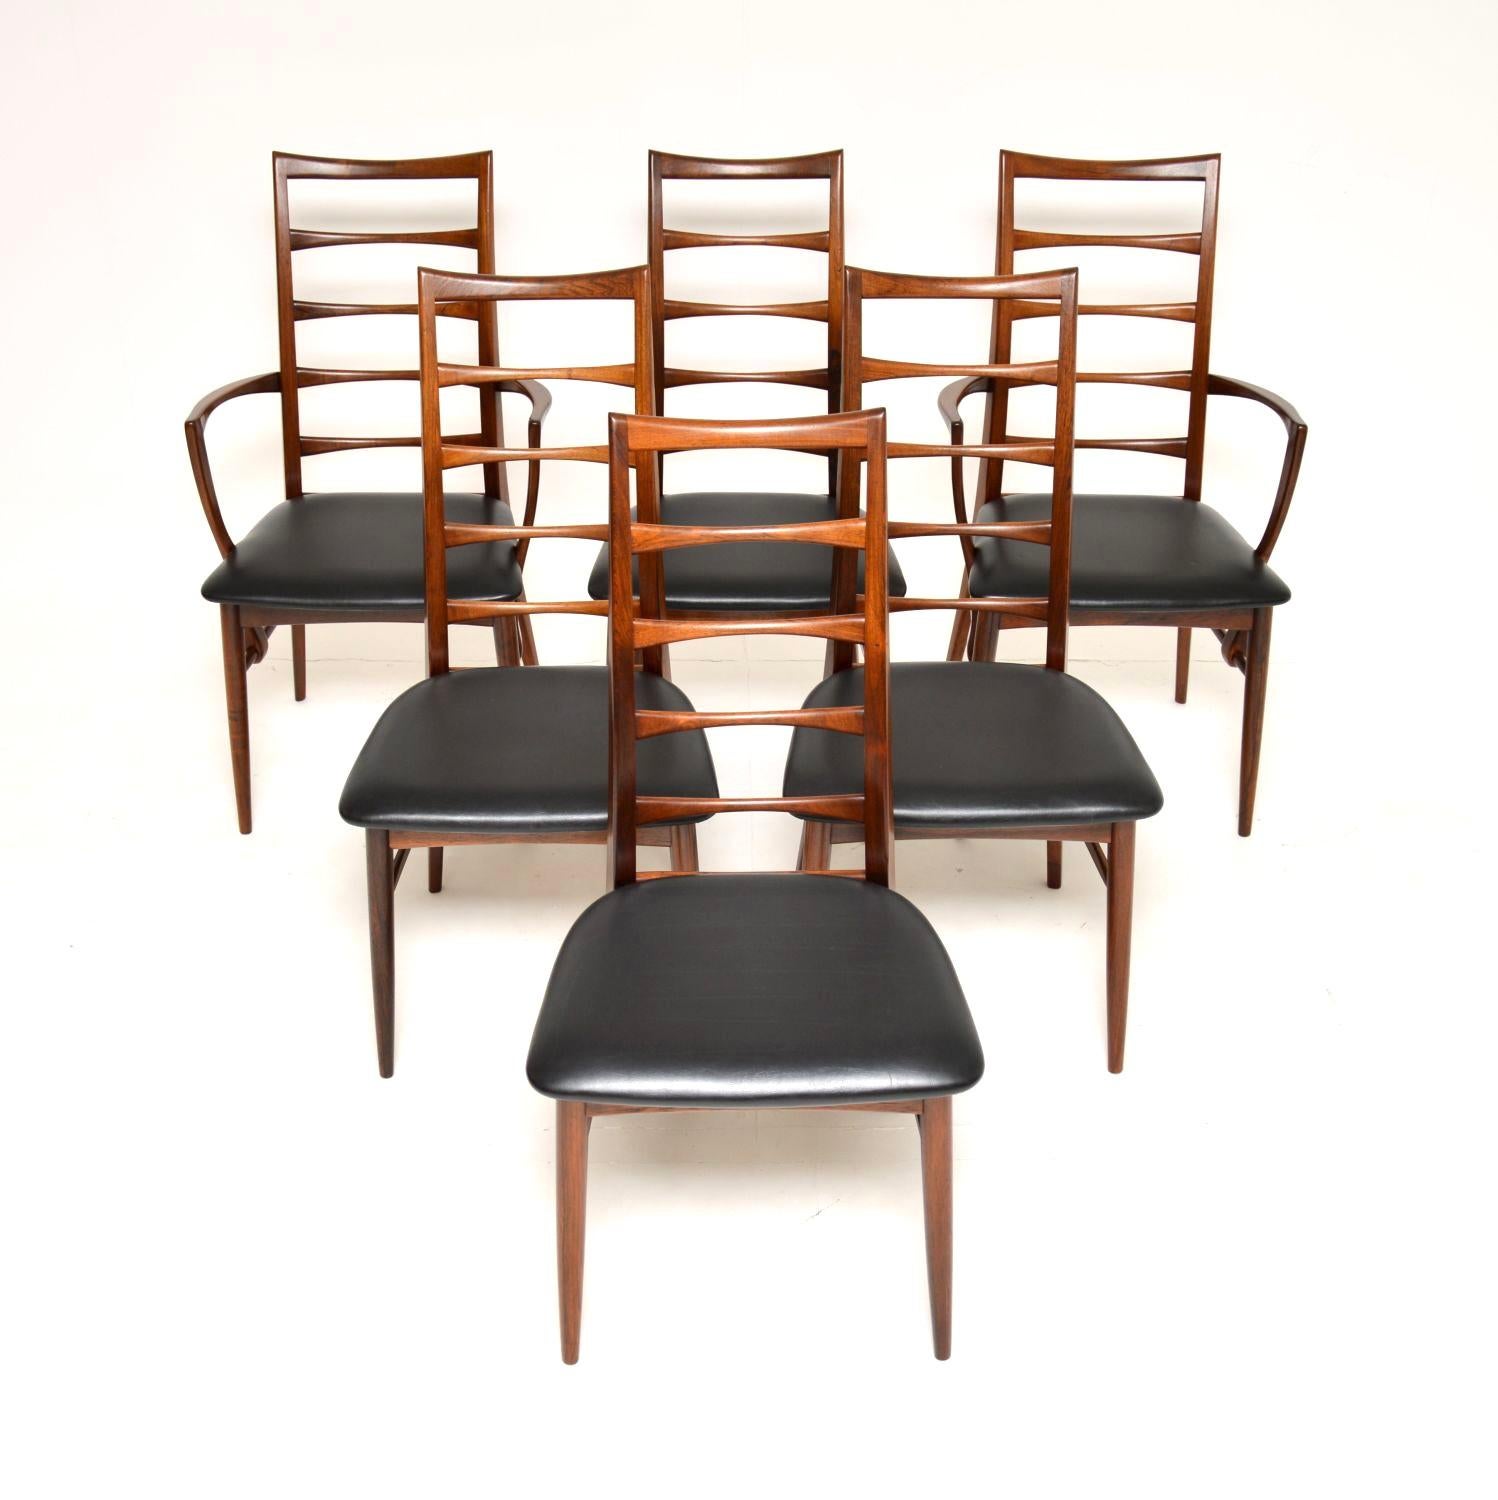 Ein äußerst stilvolles und sehr seltenes Set von sechs dänischen Esszimmerstühlen. Sie wurden von Niels Koefoed entworfen und in den 1960er Jahren in Dänemark von Koefoed Hornslet hergestellt. Dieses Modell wird als 